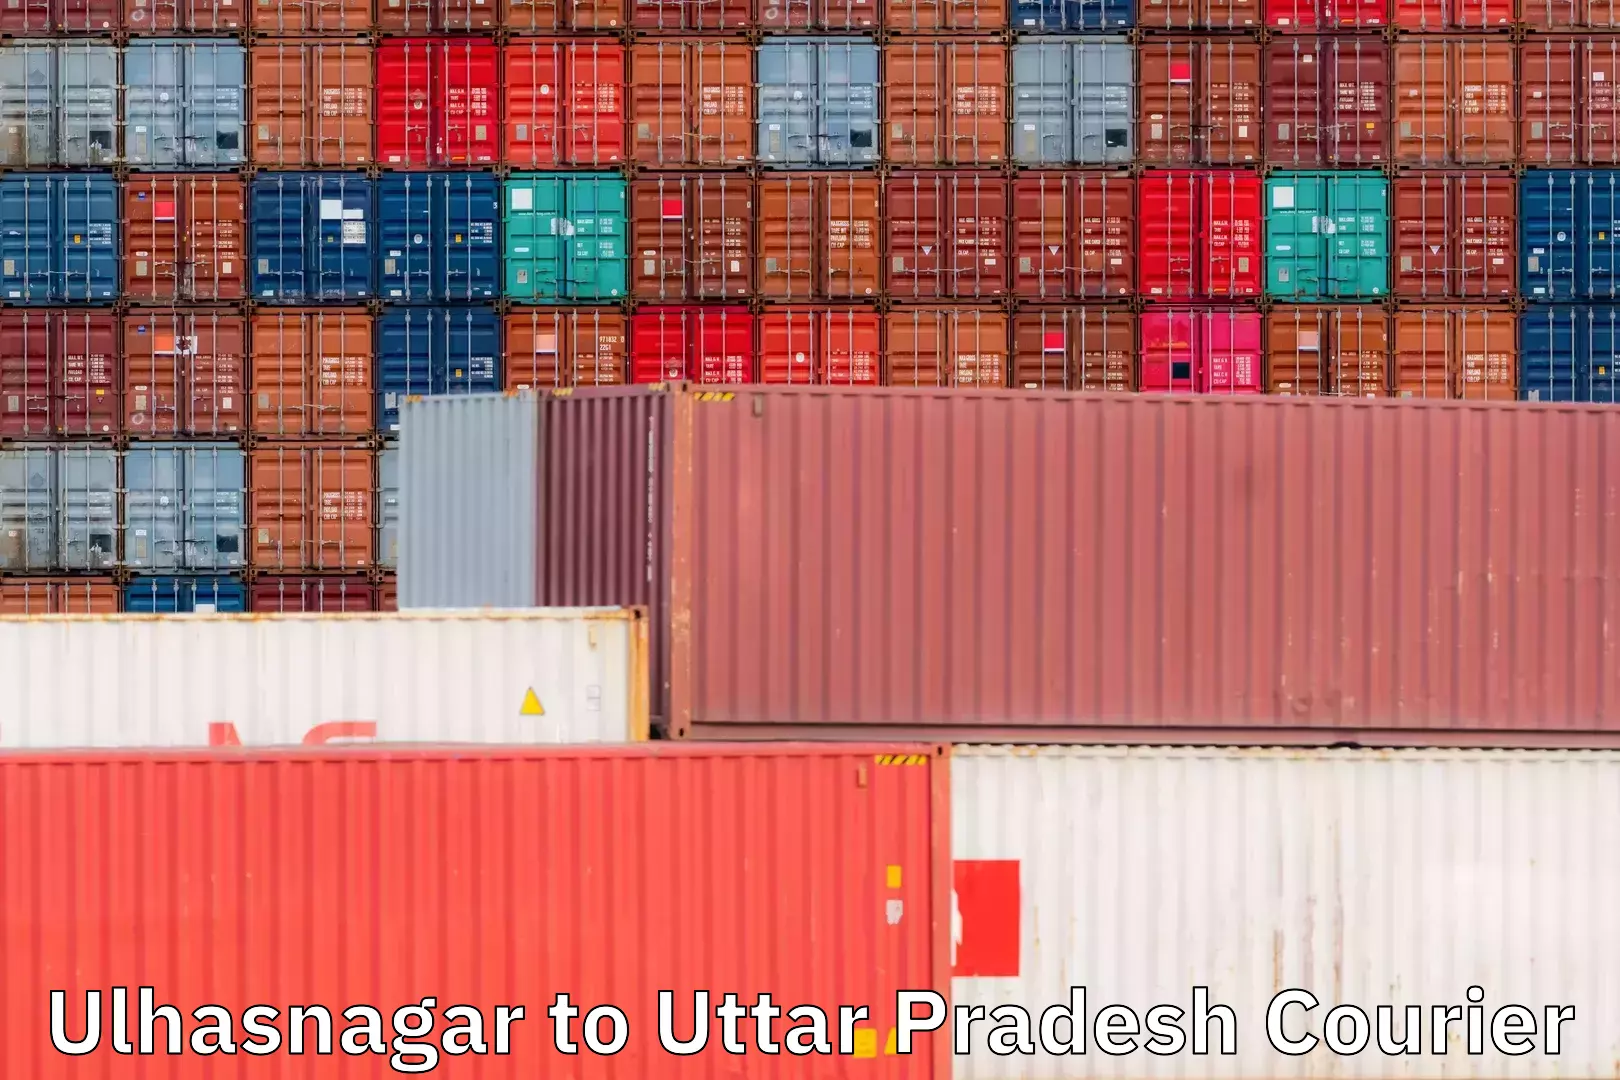 Retail shipping solutions Ulhasnagar to Uttar Pradesh